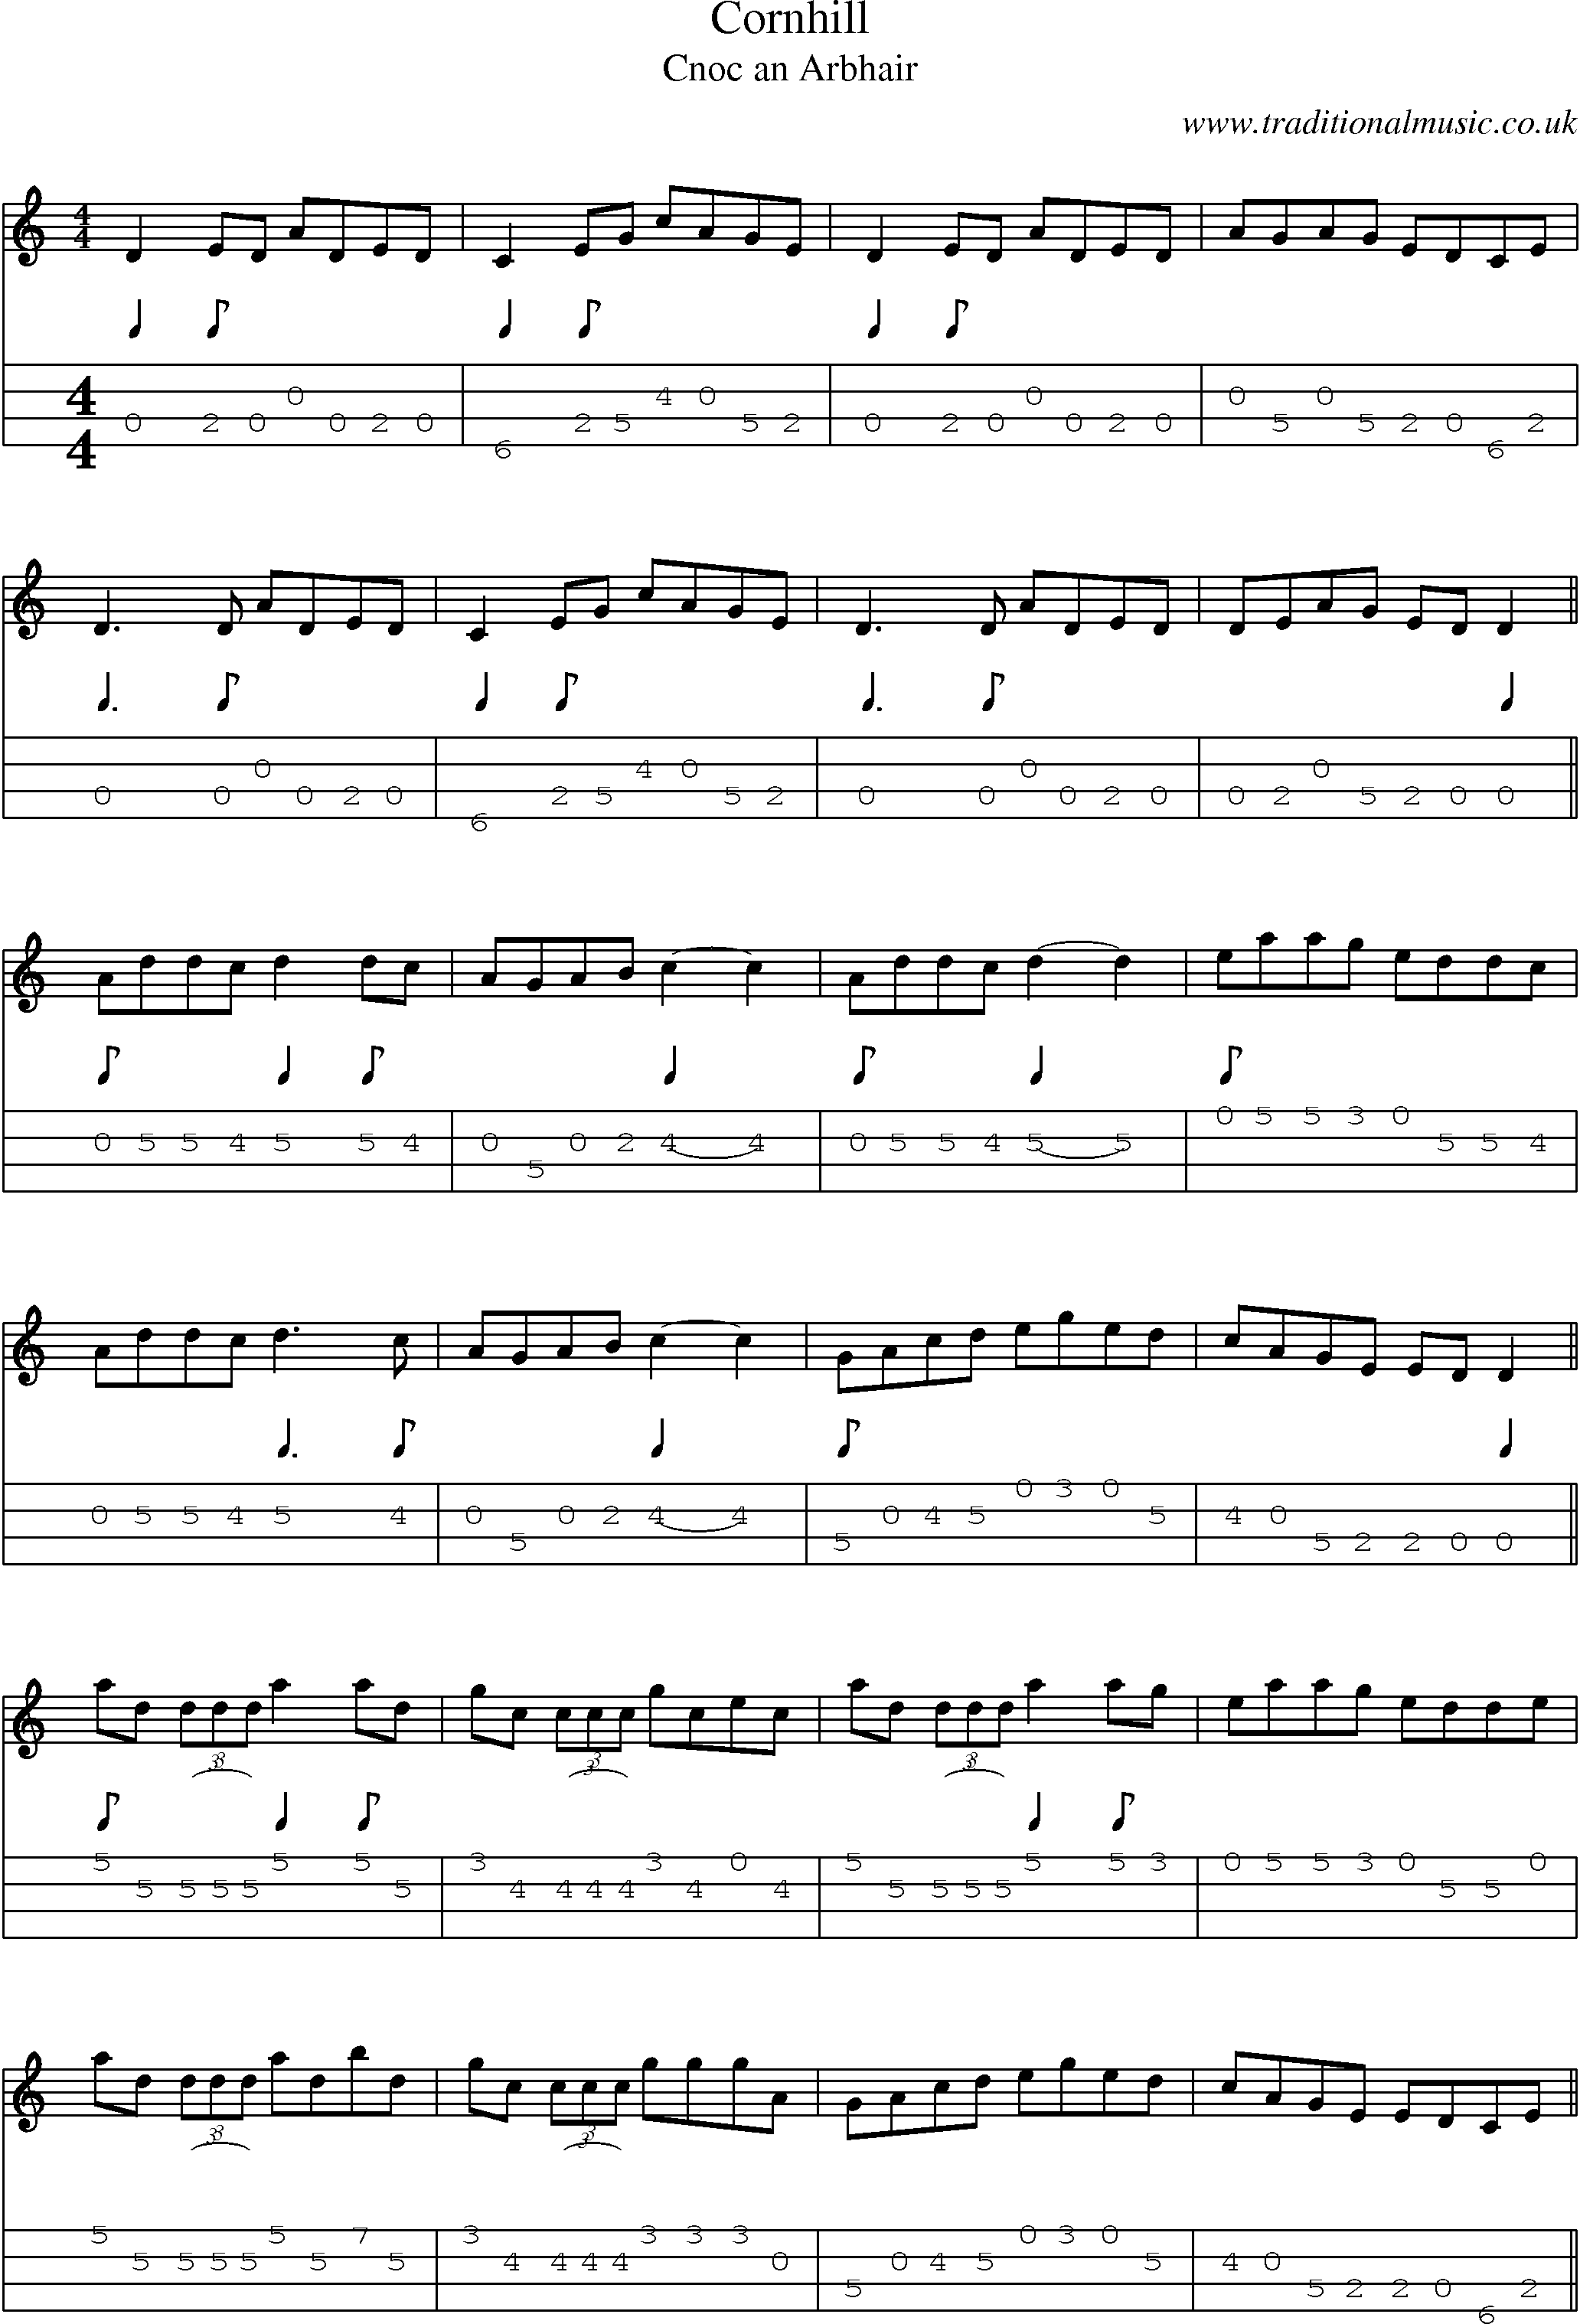 Music Score and Mandolin Tabs for Cornhill